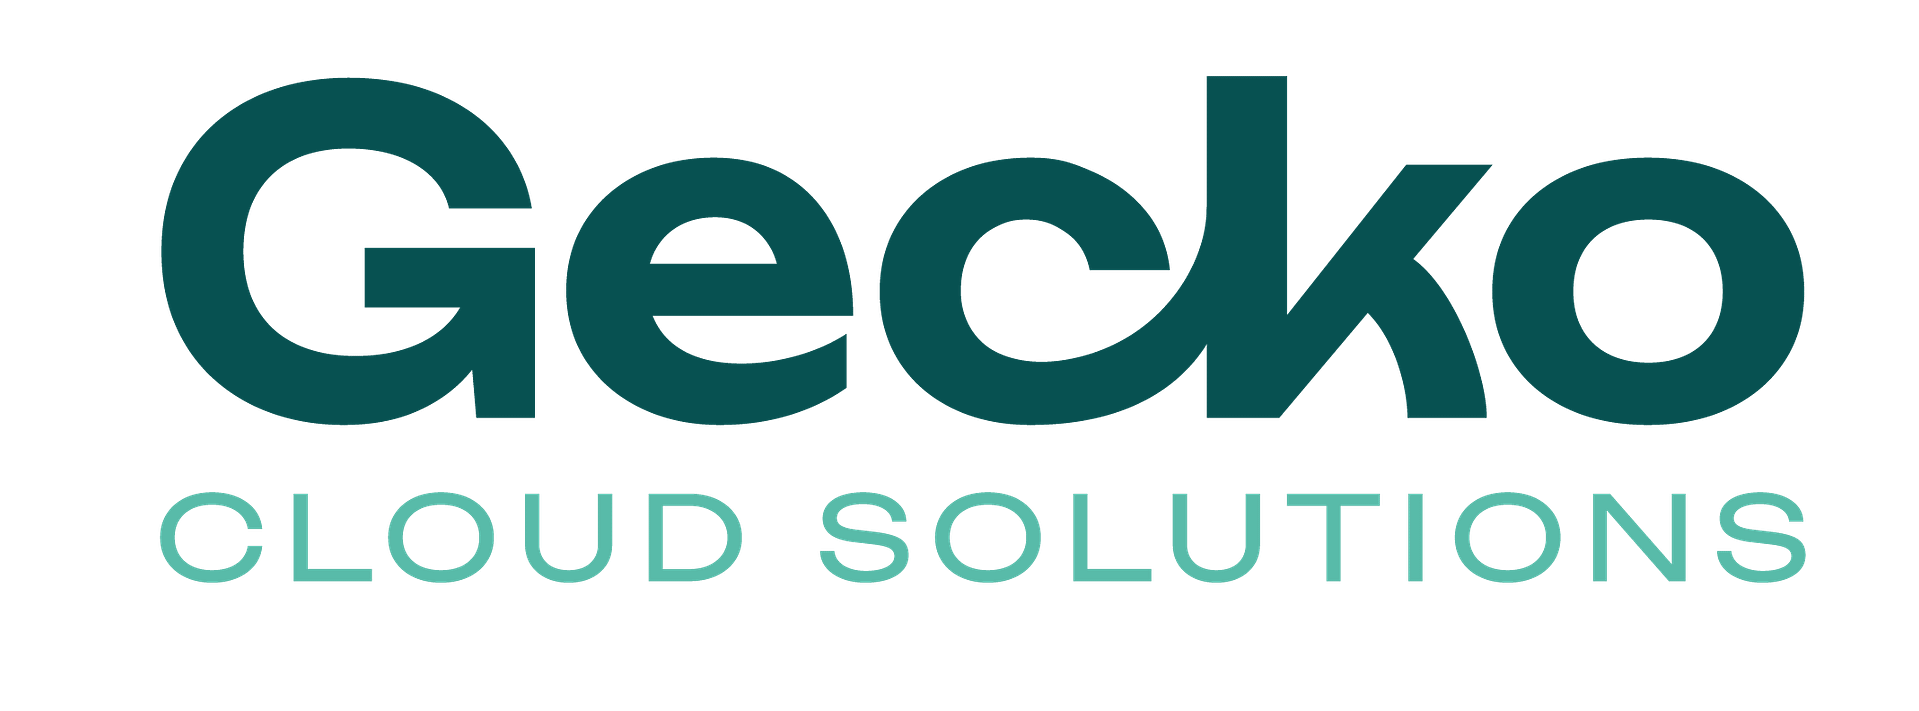 Gecko Cloud Solutions Green Logo